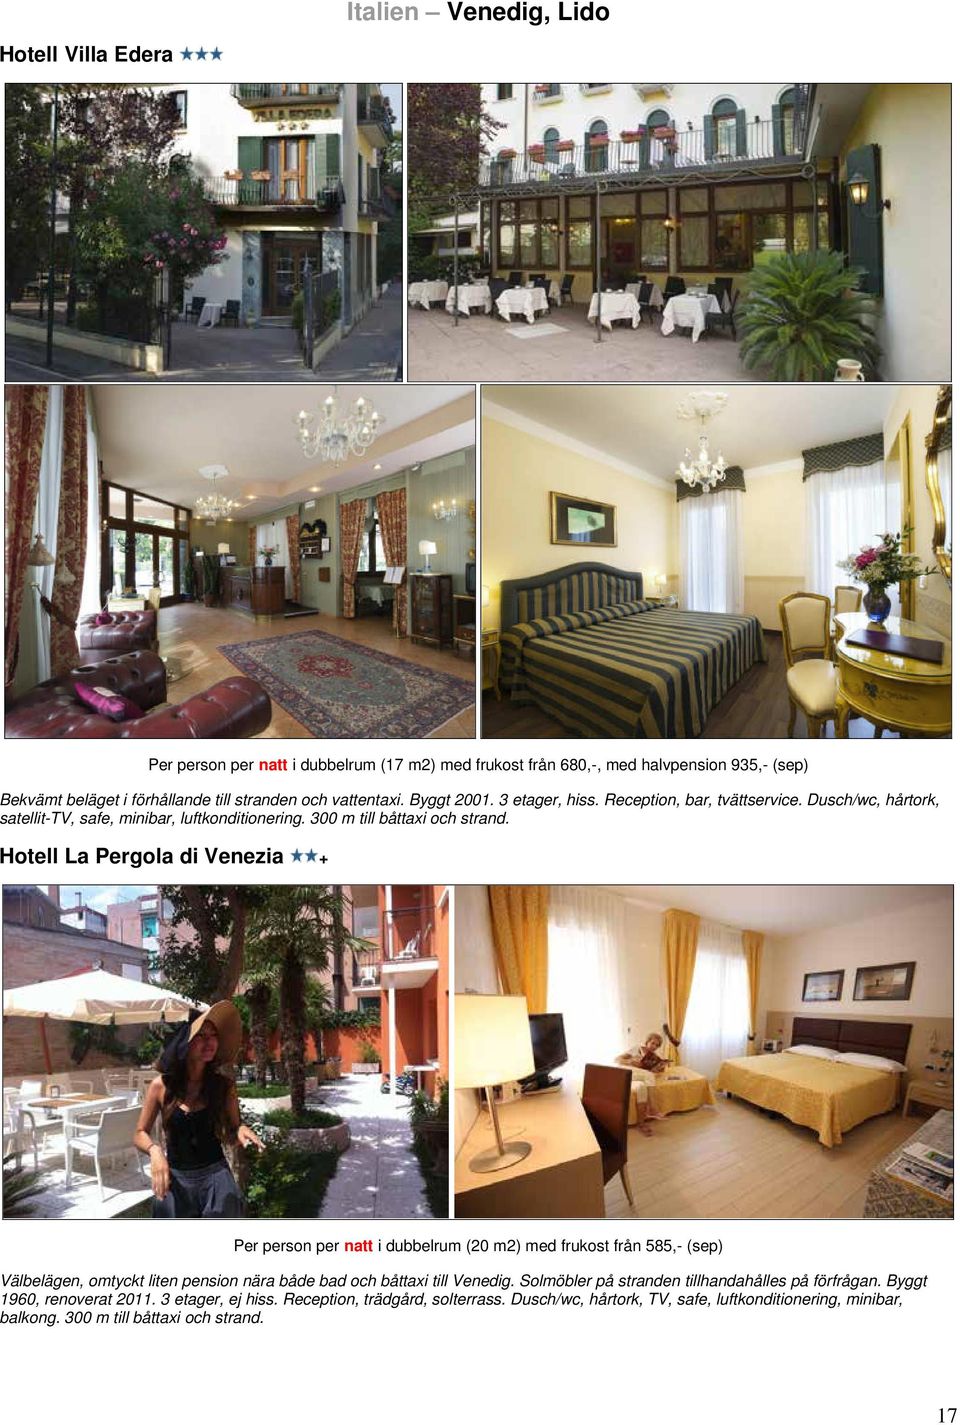 Hotell La Pergola di Venezia + Per person per natt i dubbelrum (20 m2) med frukost från 585,- (sep) Välbelägen, omtyckt liten pension nära både bad och båttaxi till Venedig.